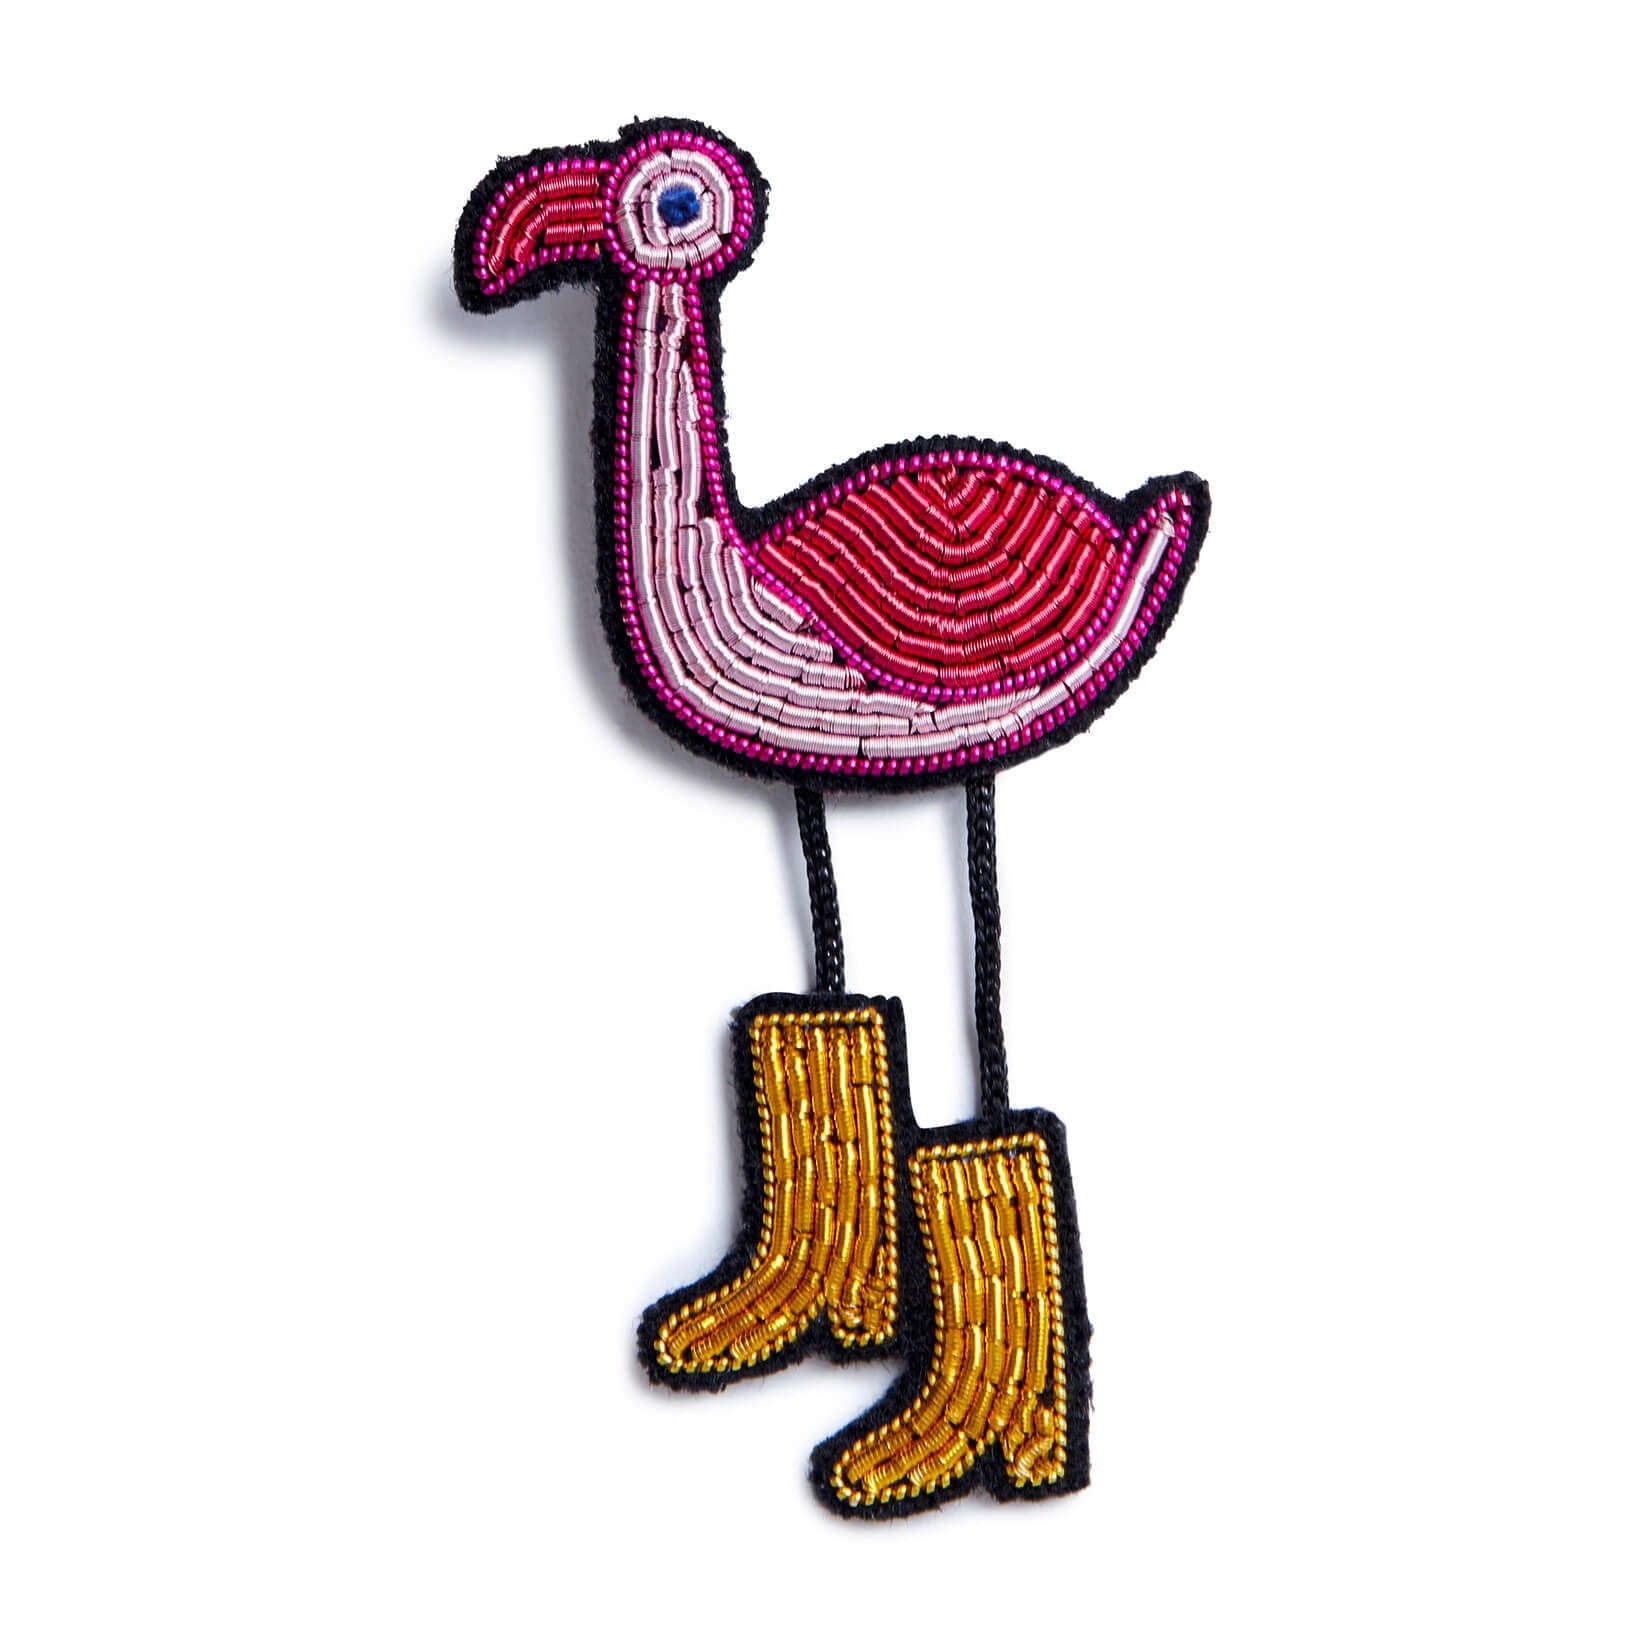 Brosche mit besticktem Flamingo mit goldenen Stiefeln, rosa, gold und schwarze Umrandung